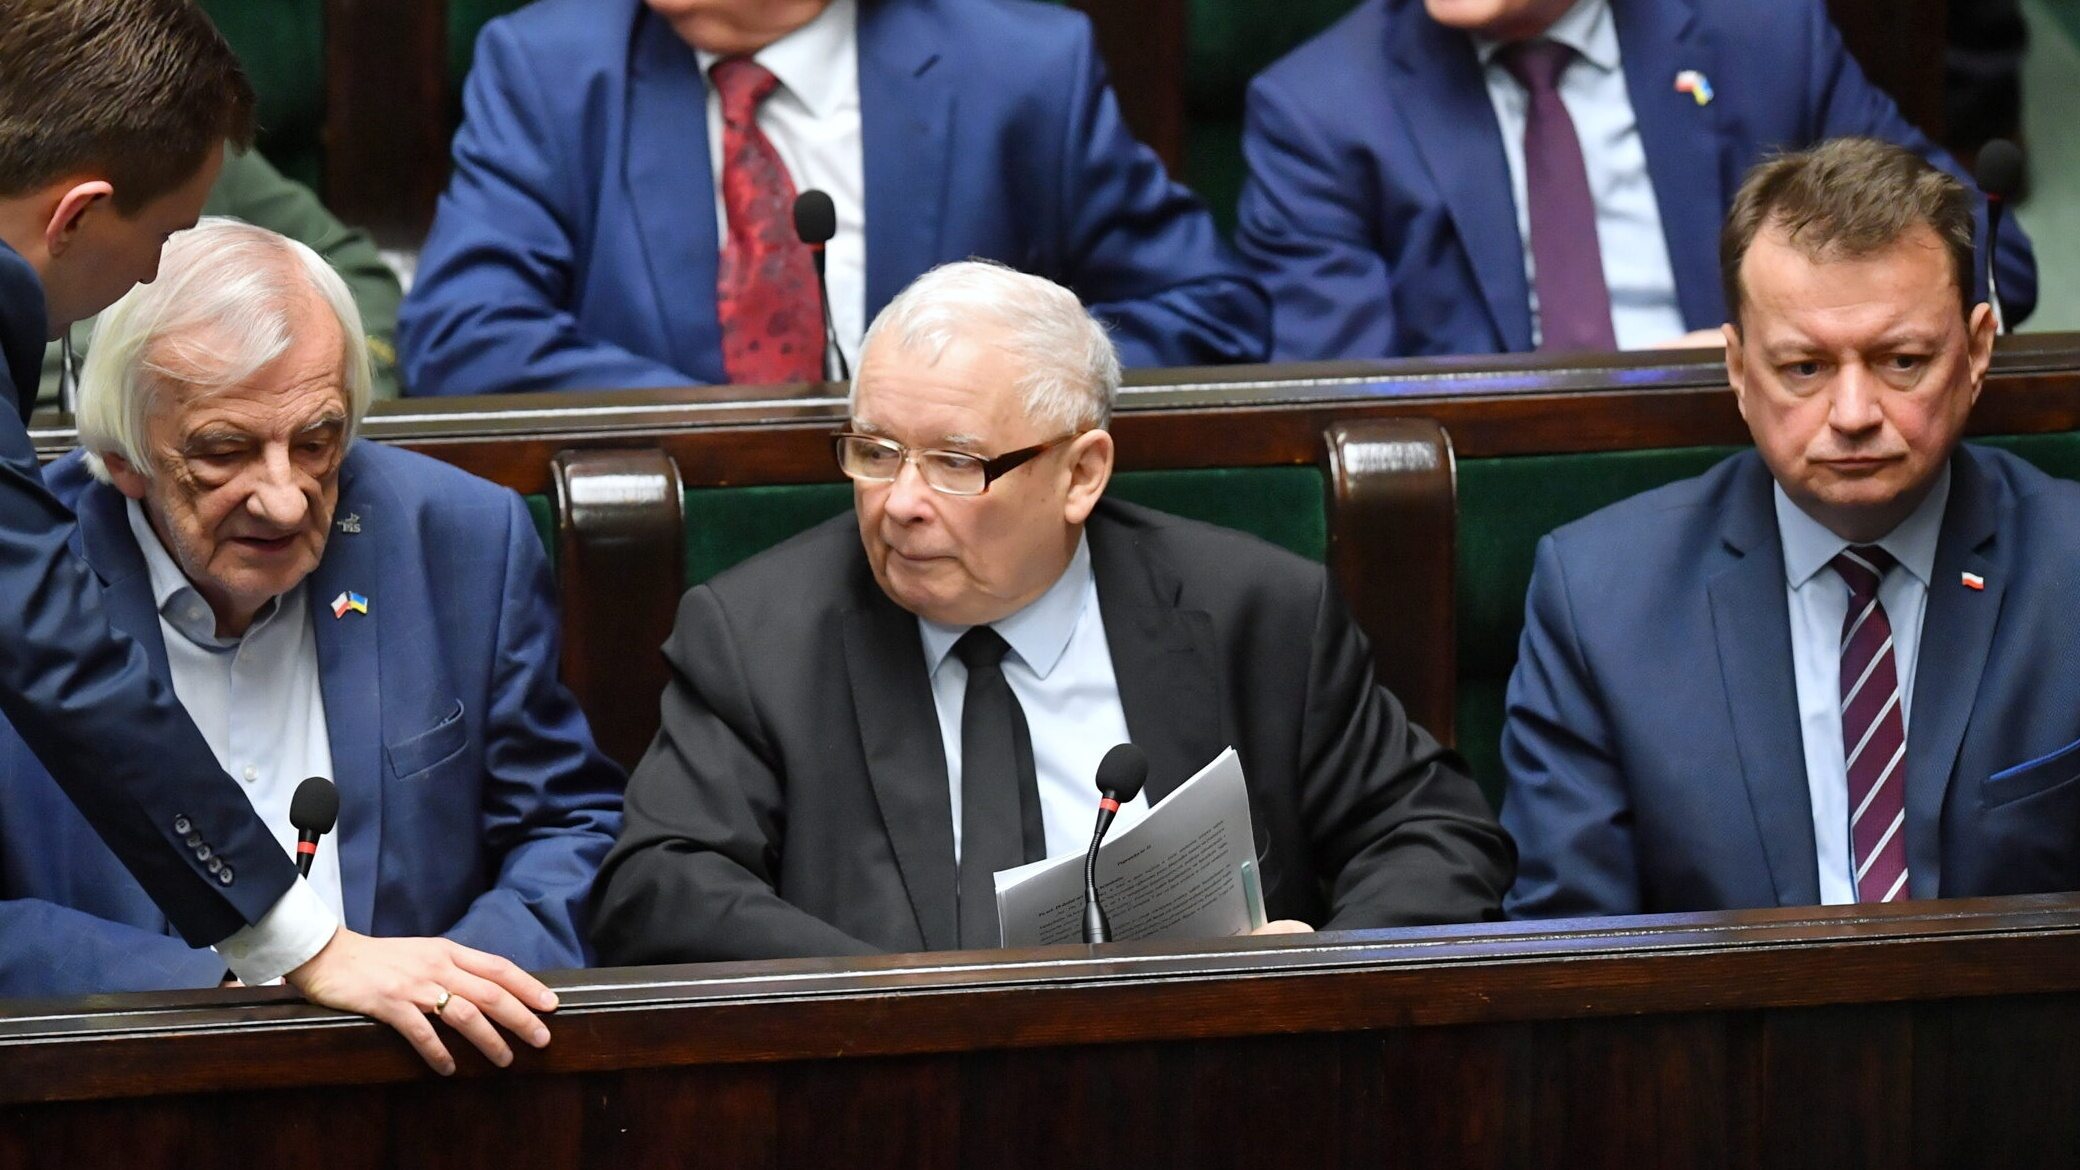 Ο πρόεδρος του PiS Jarosław Kaczyński, ο αντιπρόεδρος του Sejm Ryszard Terlecki και ο υπουργός Εθνικής Άμυνας Mariusz Błaszczak